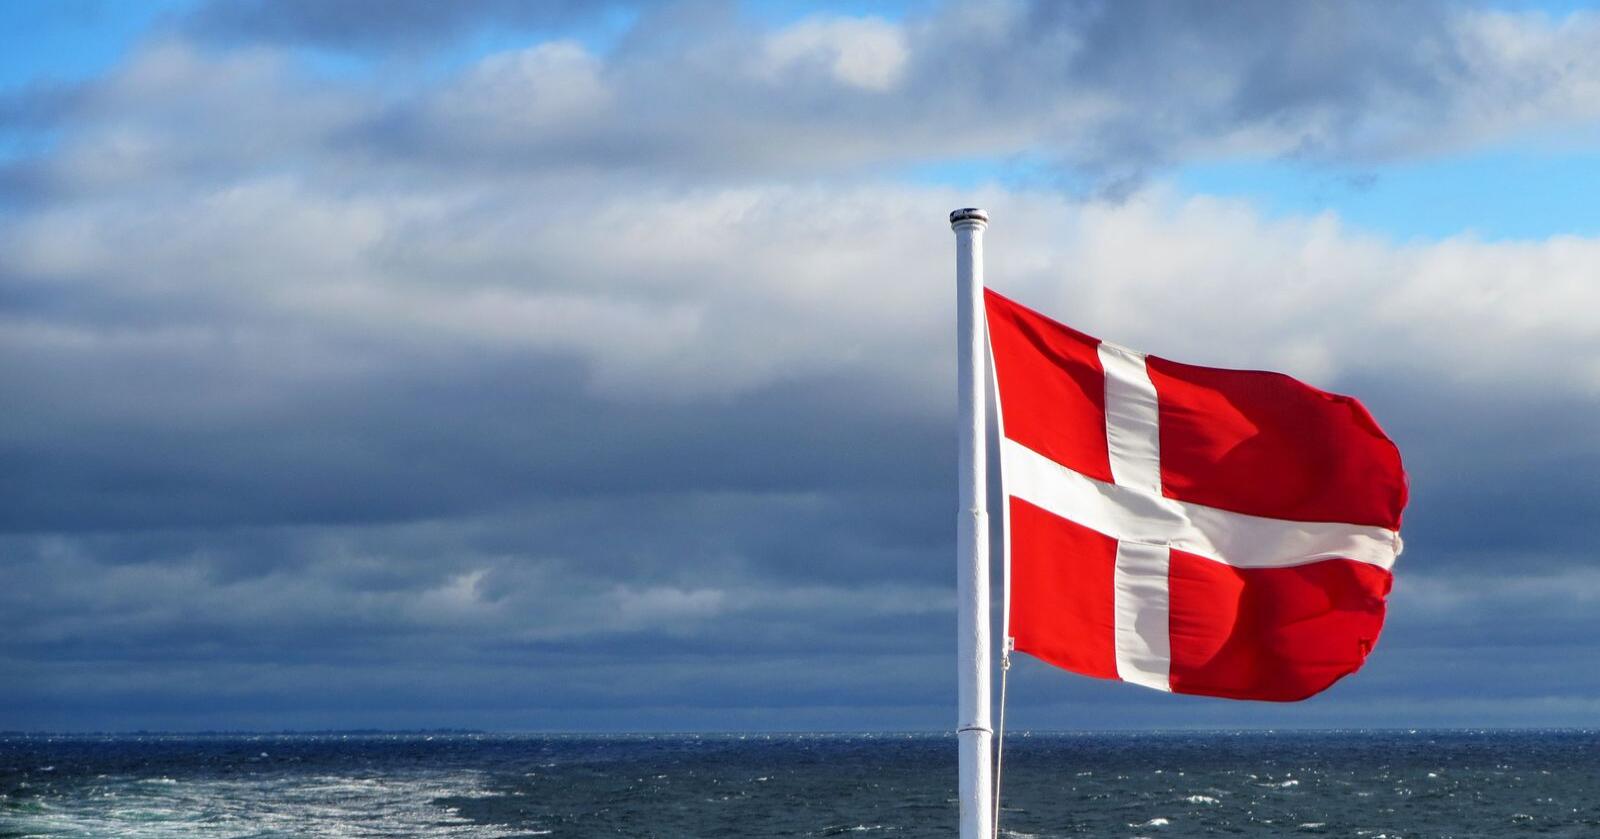 Danmark ønsker å innføre et klimamerke for mat innen EU. Foto: Mark König//Unsplash